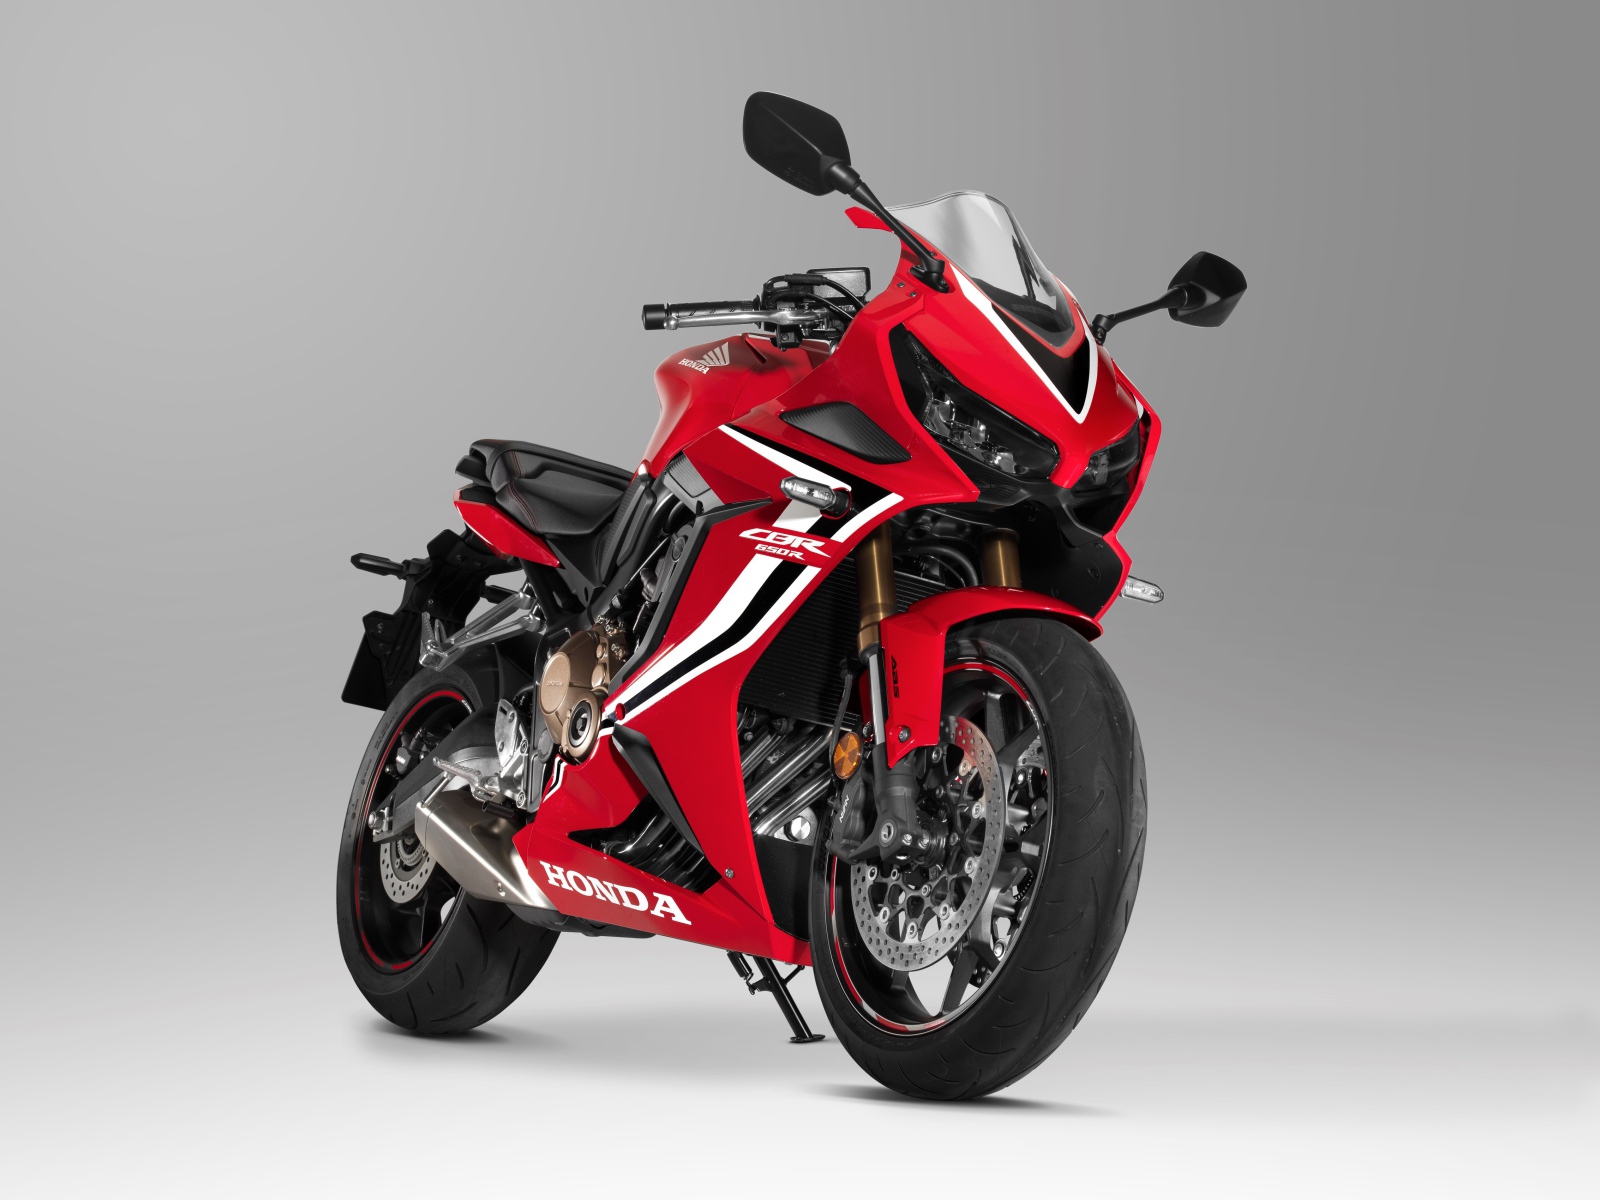 Красный мотоцикл Honda CBR 650 RR, 2021 года на сером фоне